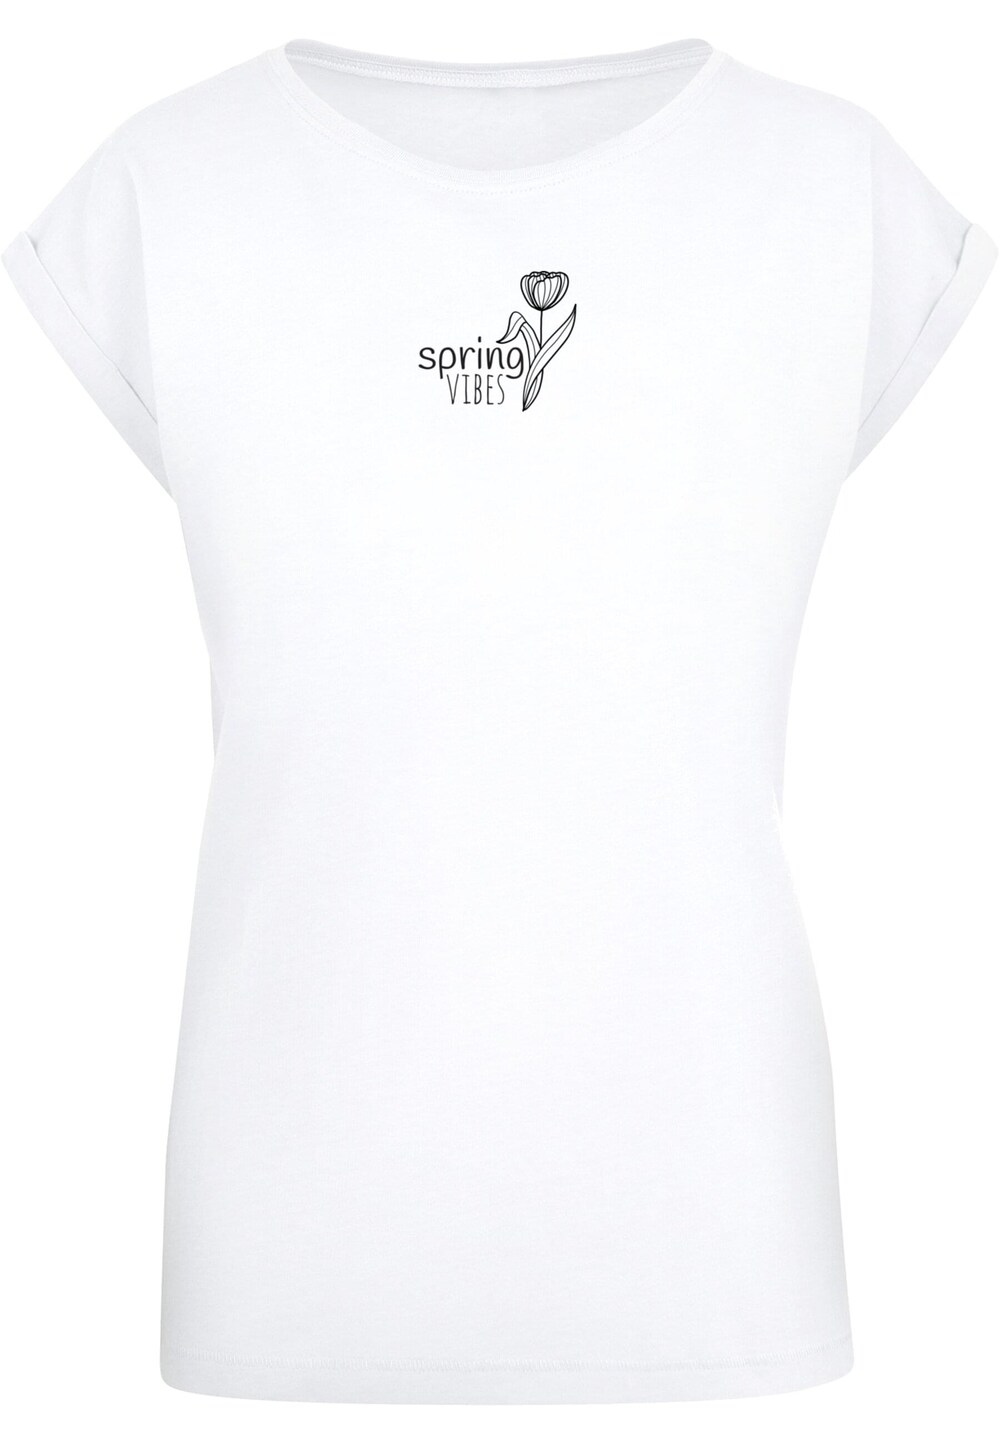 Рубашка Merchcode Spring - Vibes, белый